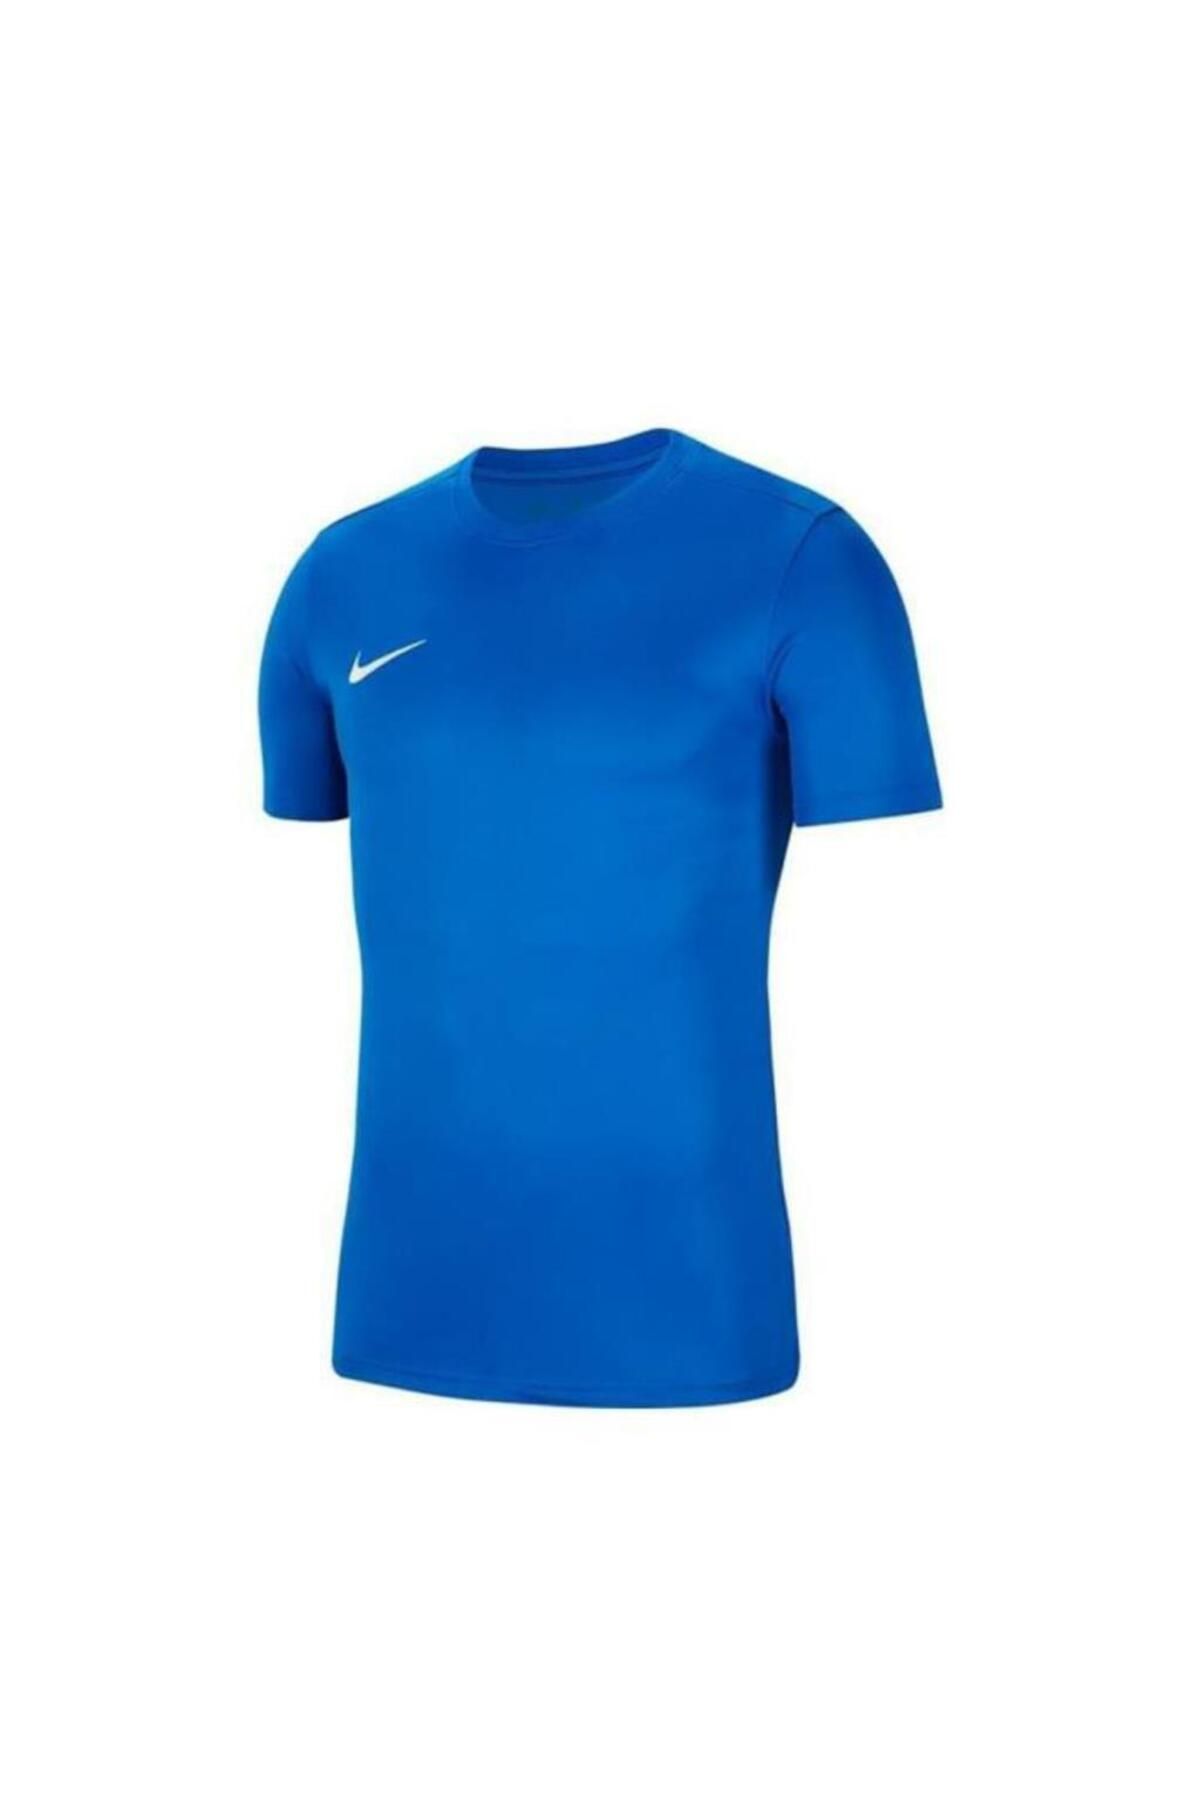 Nike Bv6708 Drı Fıt Park 7 Jby T-shirt Mavi